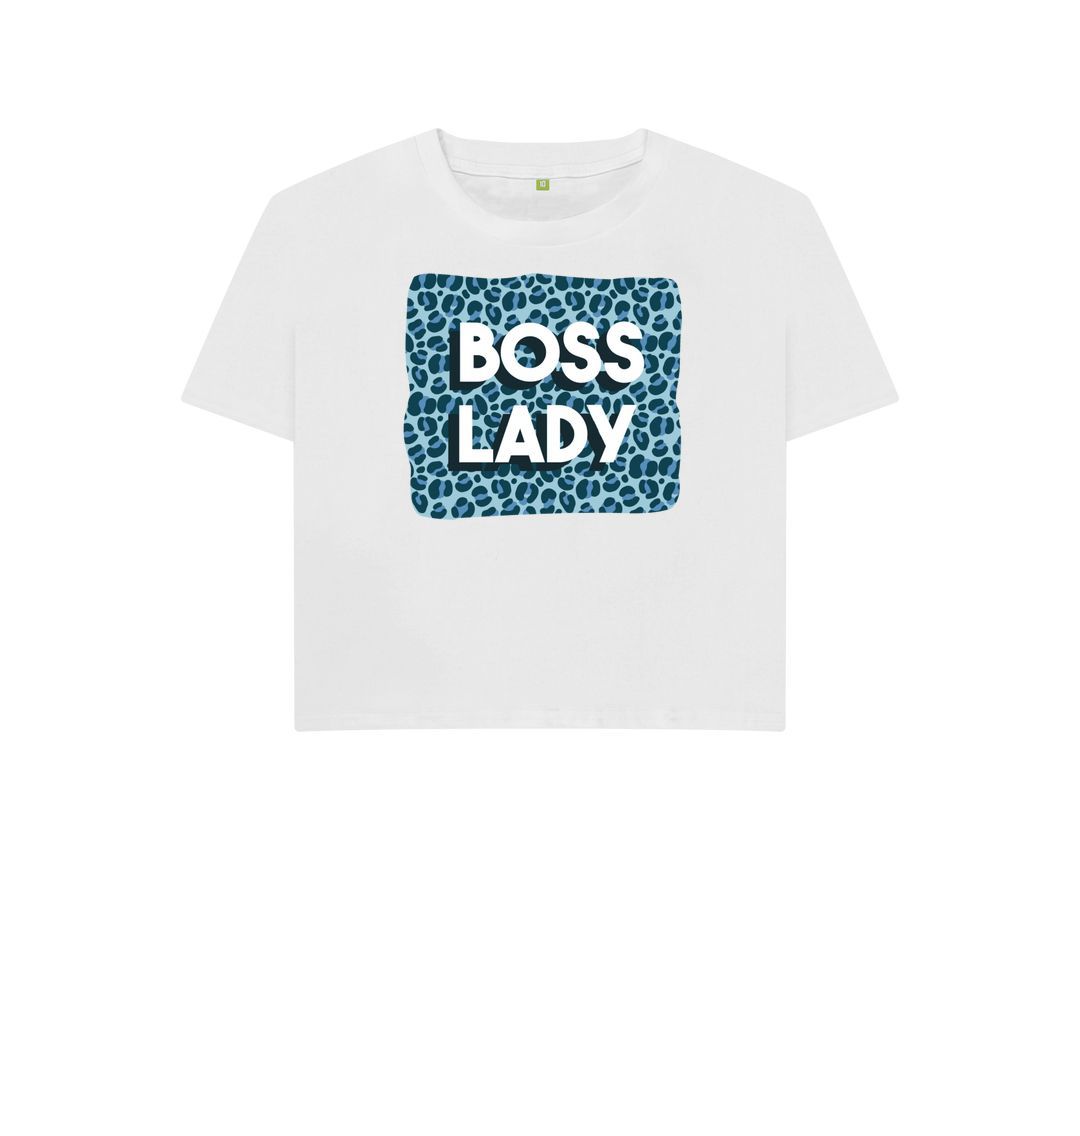 White Boss Lady Women's Boxy Tee